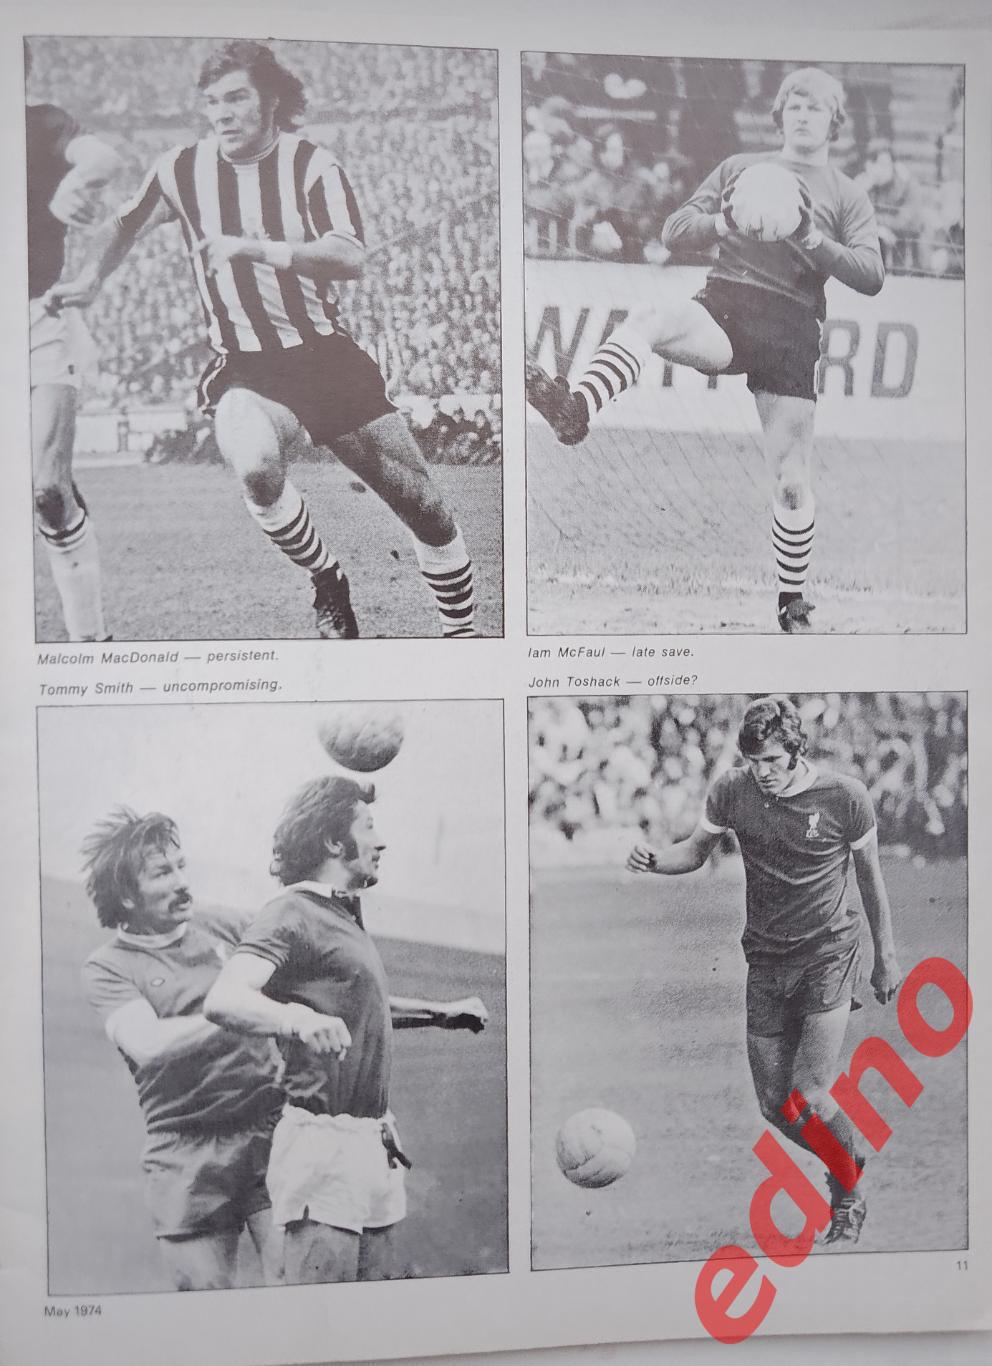 Football As News1974г. Ф. К. Мейдстоун/Ливерпуль 6